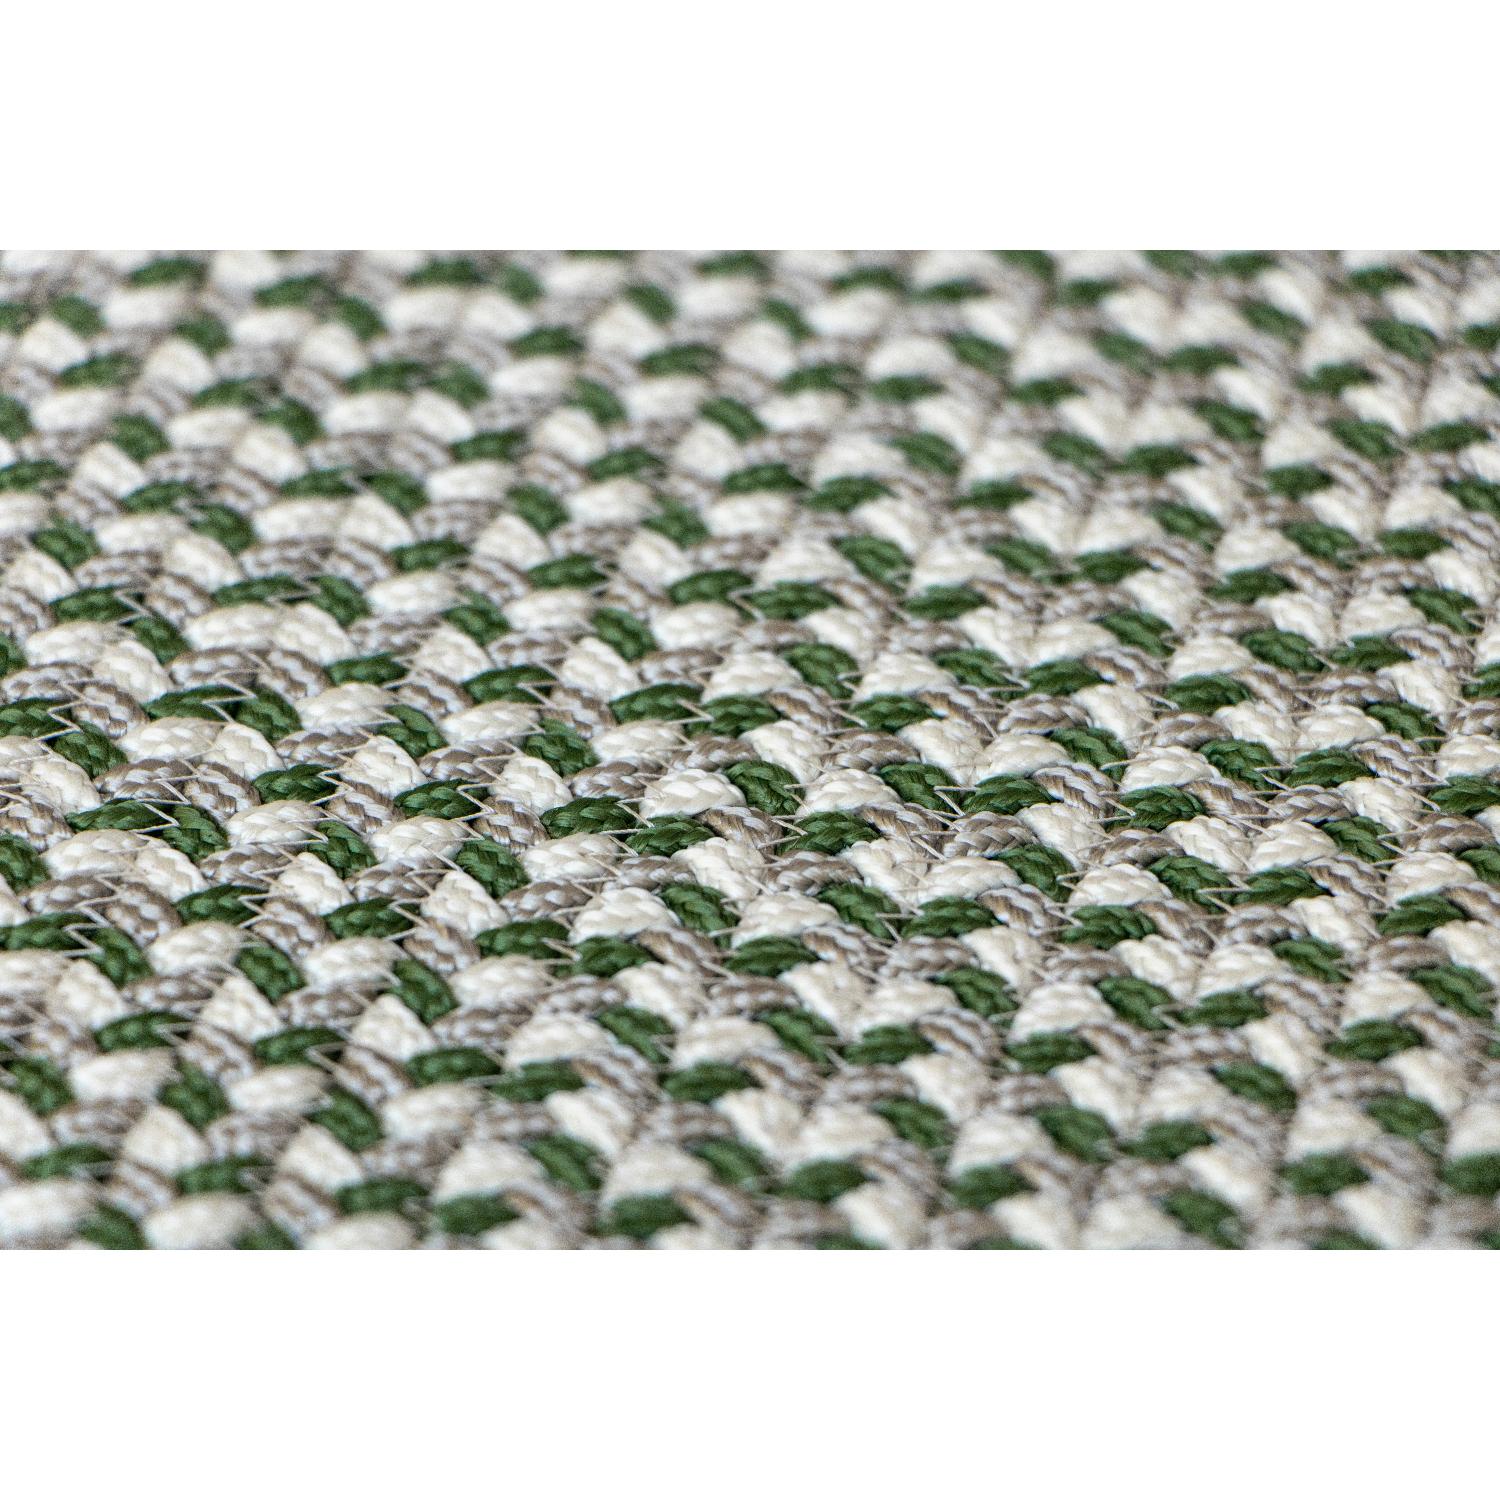 Contemporary Tappeto biofilico in filato tecnico resistente grigio Deanna Comellini 285x485cm For Sale